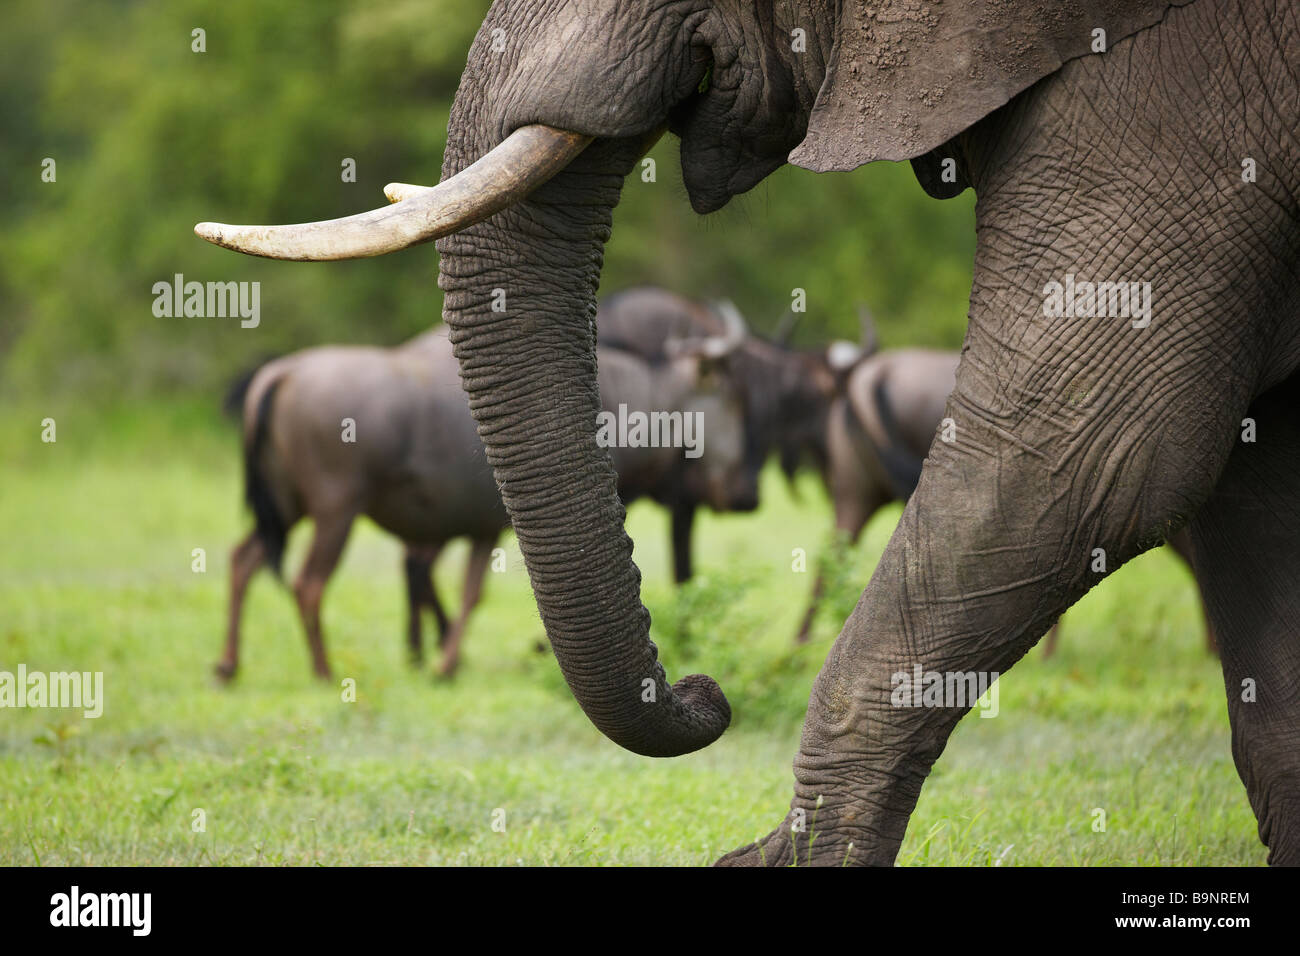 Dettaglio dell' elefante africano la gamba e il tronco con blue gnu oltre, Kruger National Park, Sud Africa Foto Stock